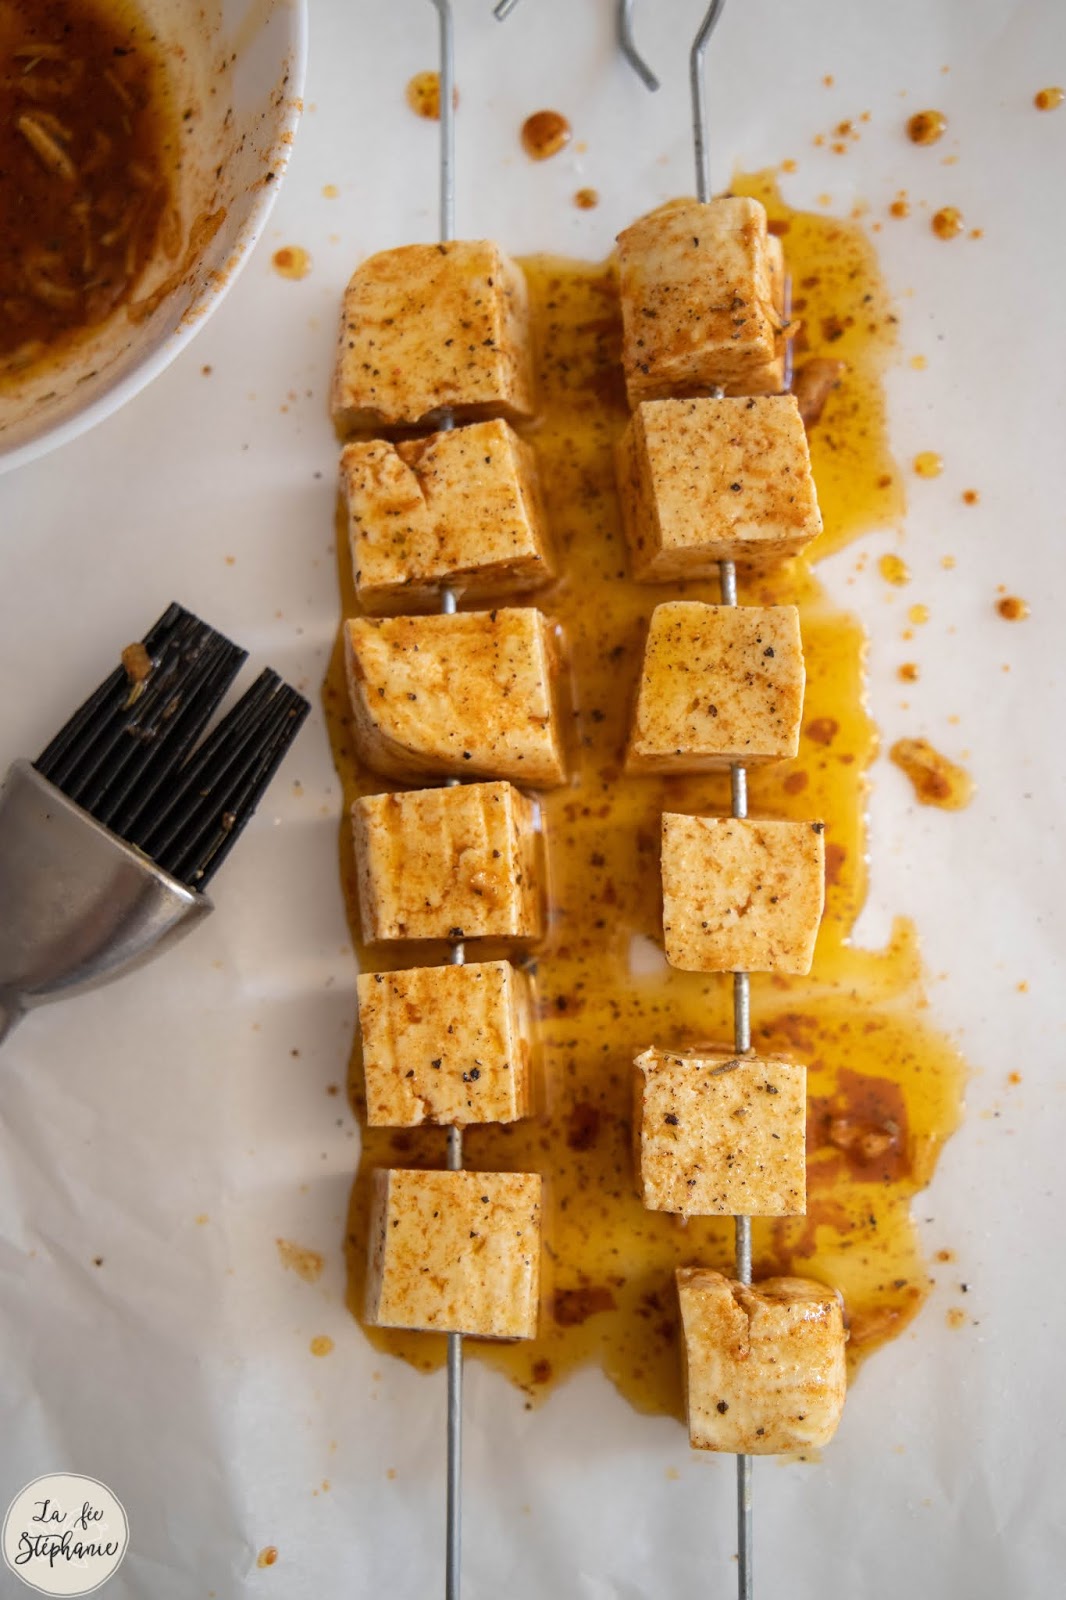 Brochettes de Tofu Mariné et Légumes Grillés - Recette Plat Principal –  Prana Foods